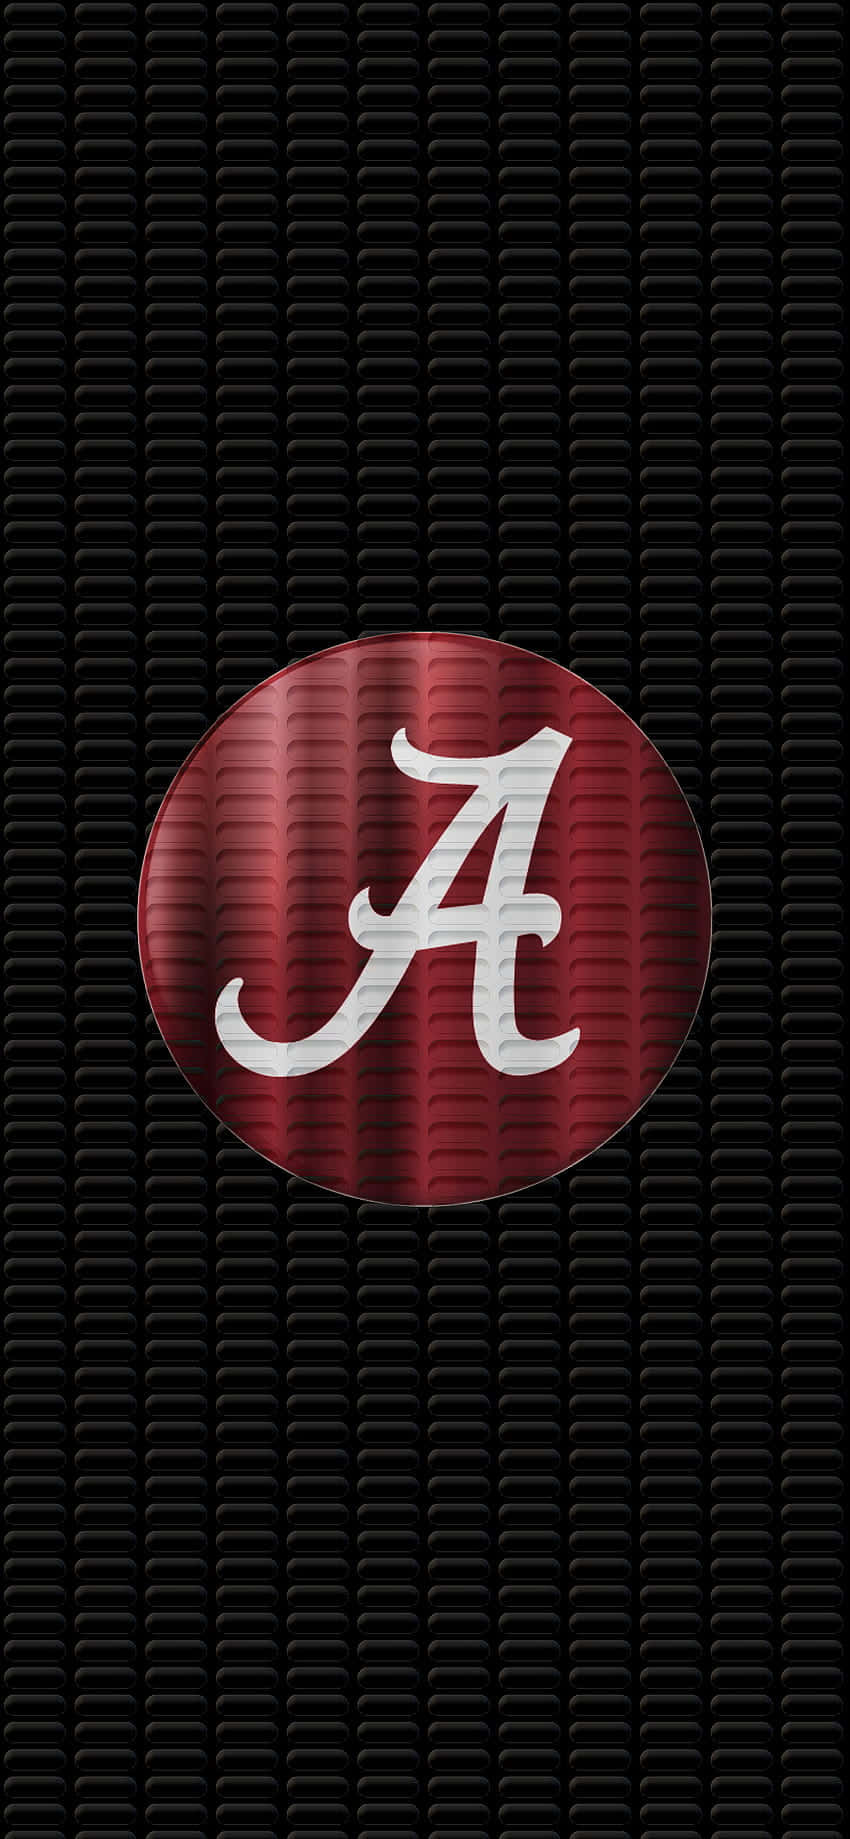 Crimson Tide Fans Få klar til det næste store spil med en Alabama fodbold iphone tapet! Wallpaper